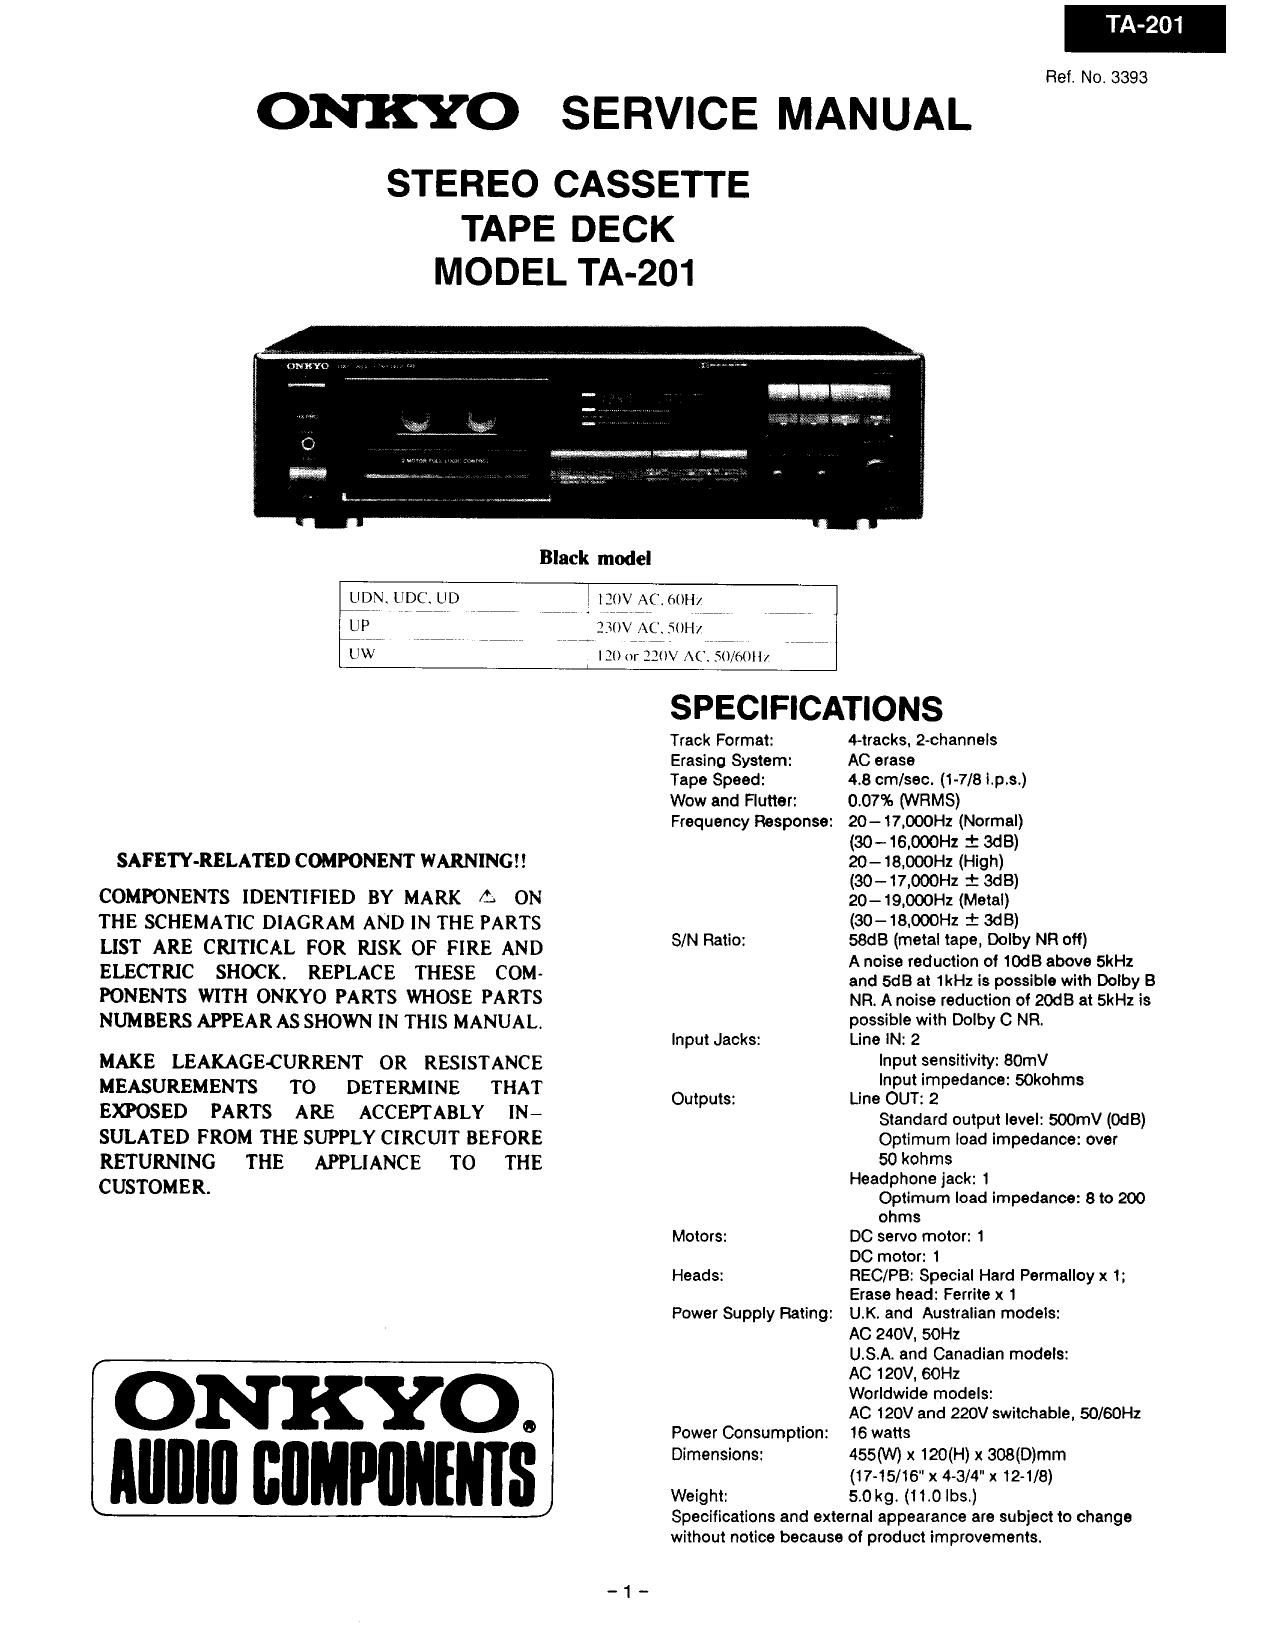 Onkyo TA 201 Service Manual